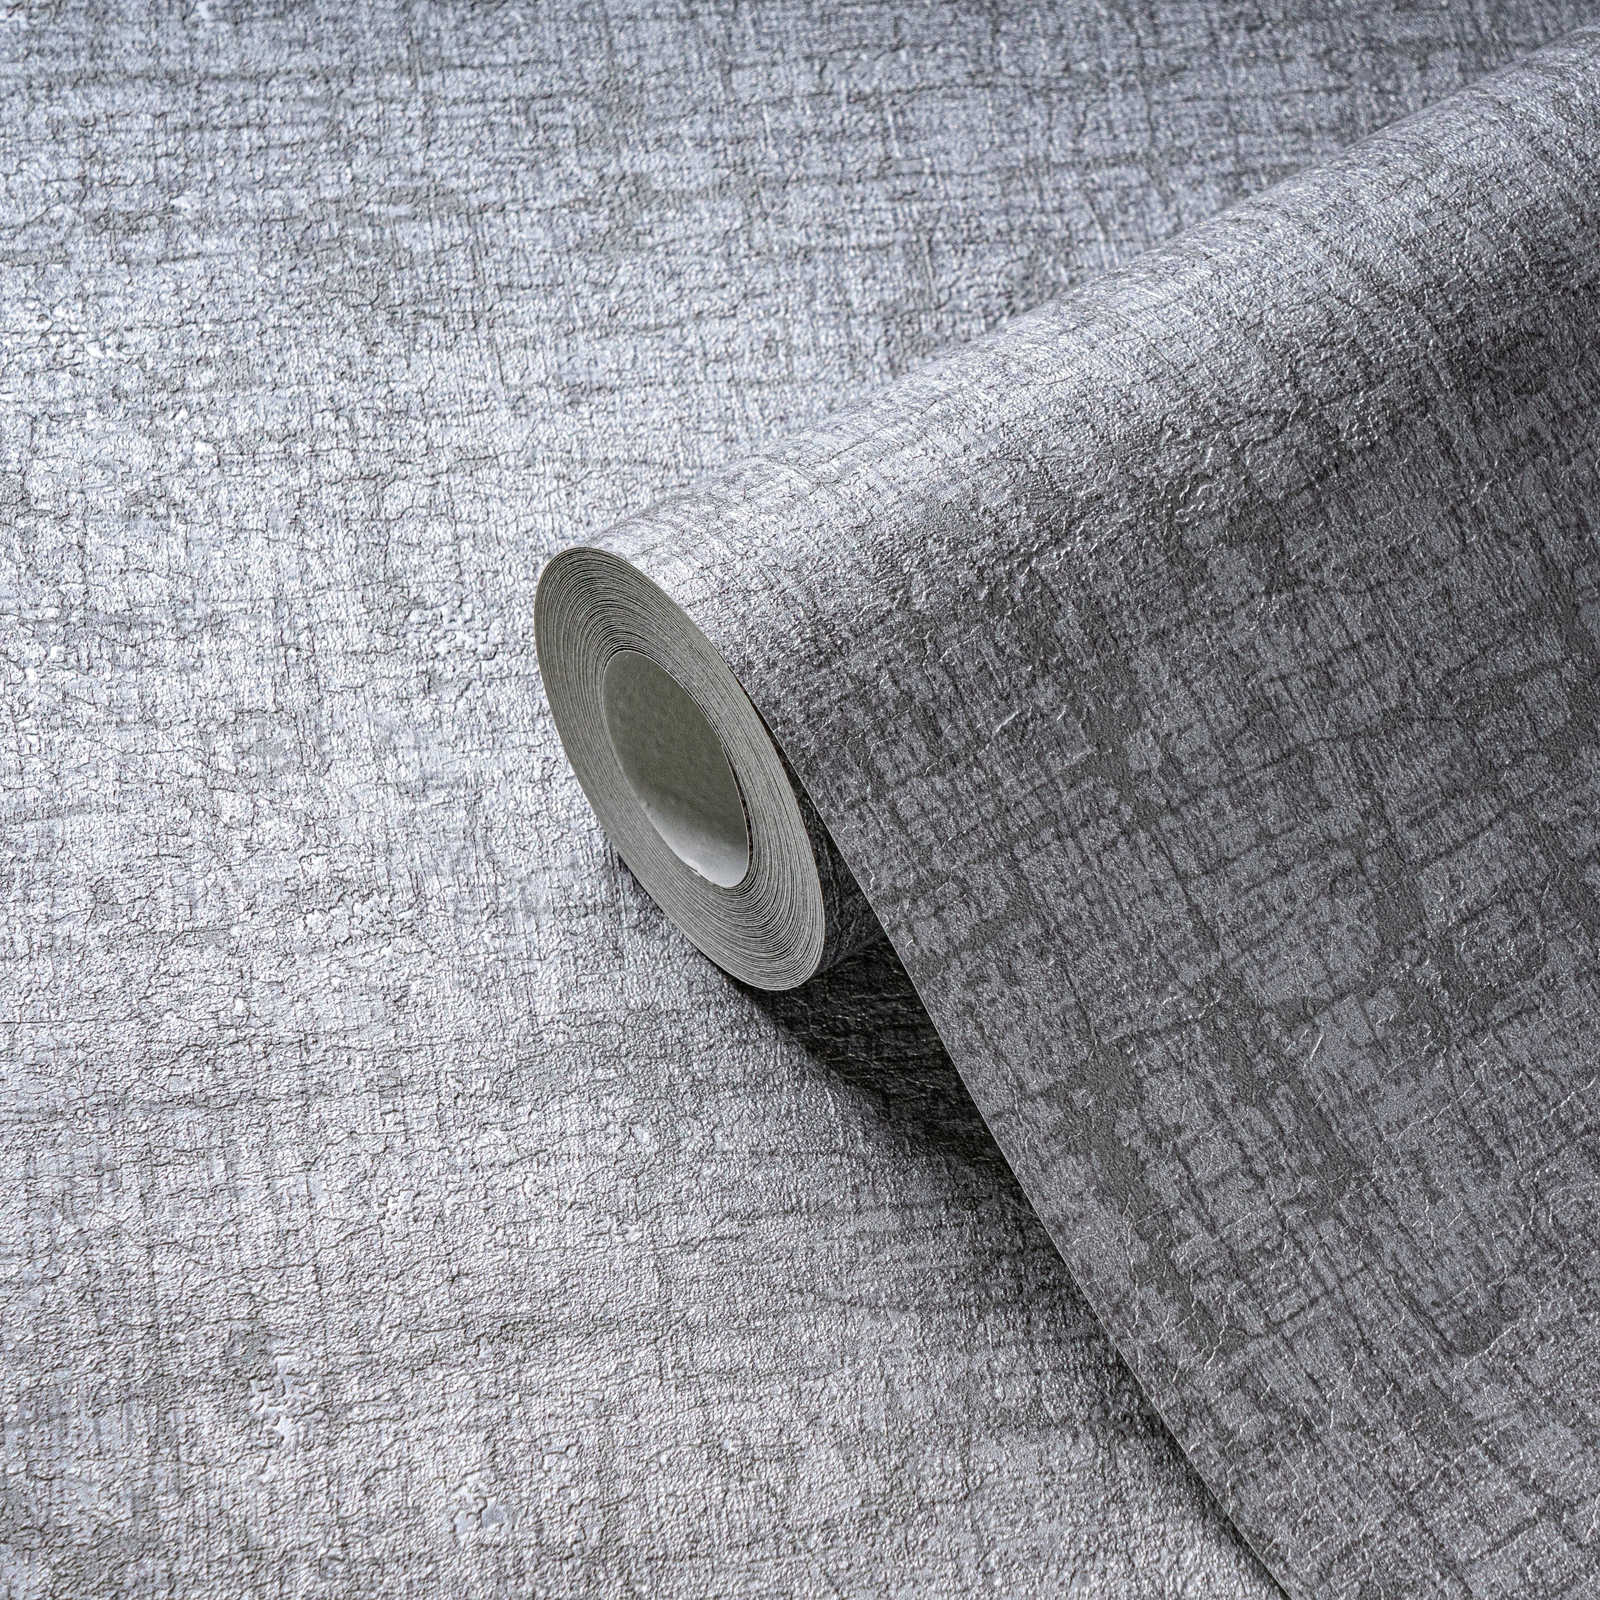             Carta da parati non tessuta con aspetto tessile leggermente lucido - grigio, grigio scuro
        